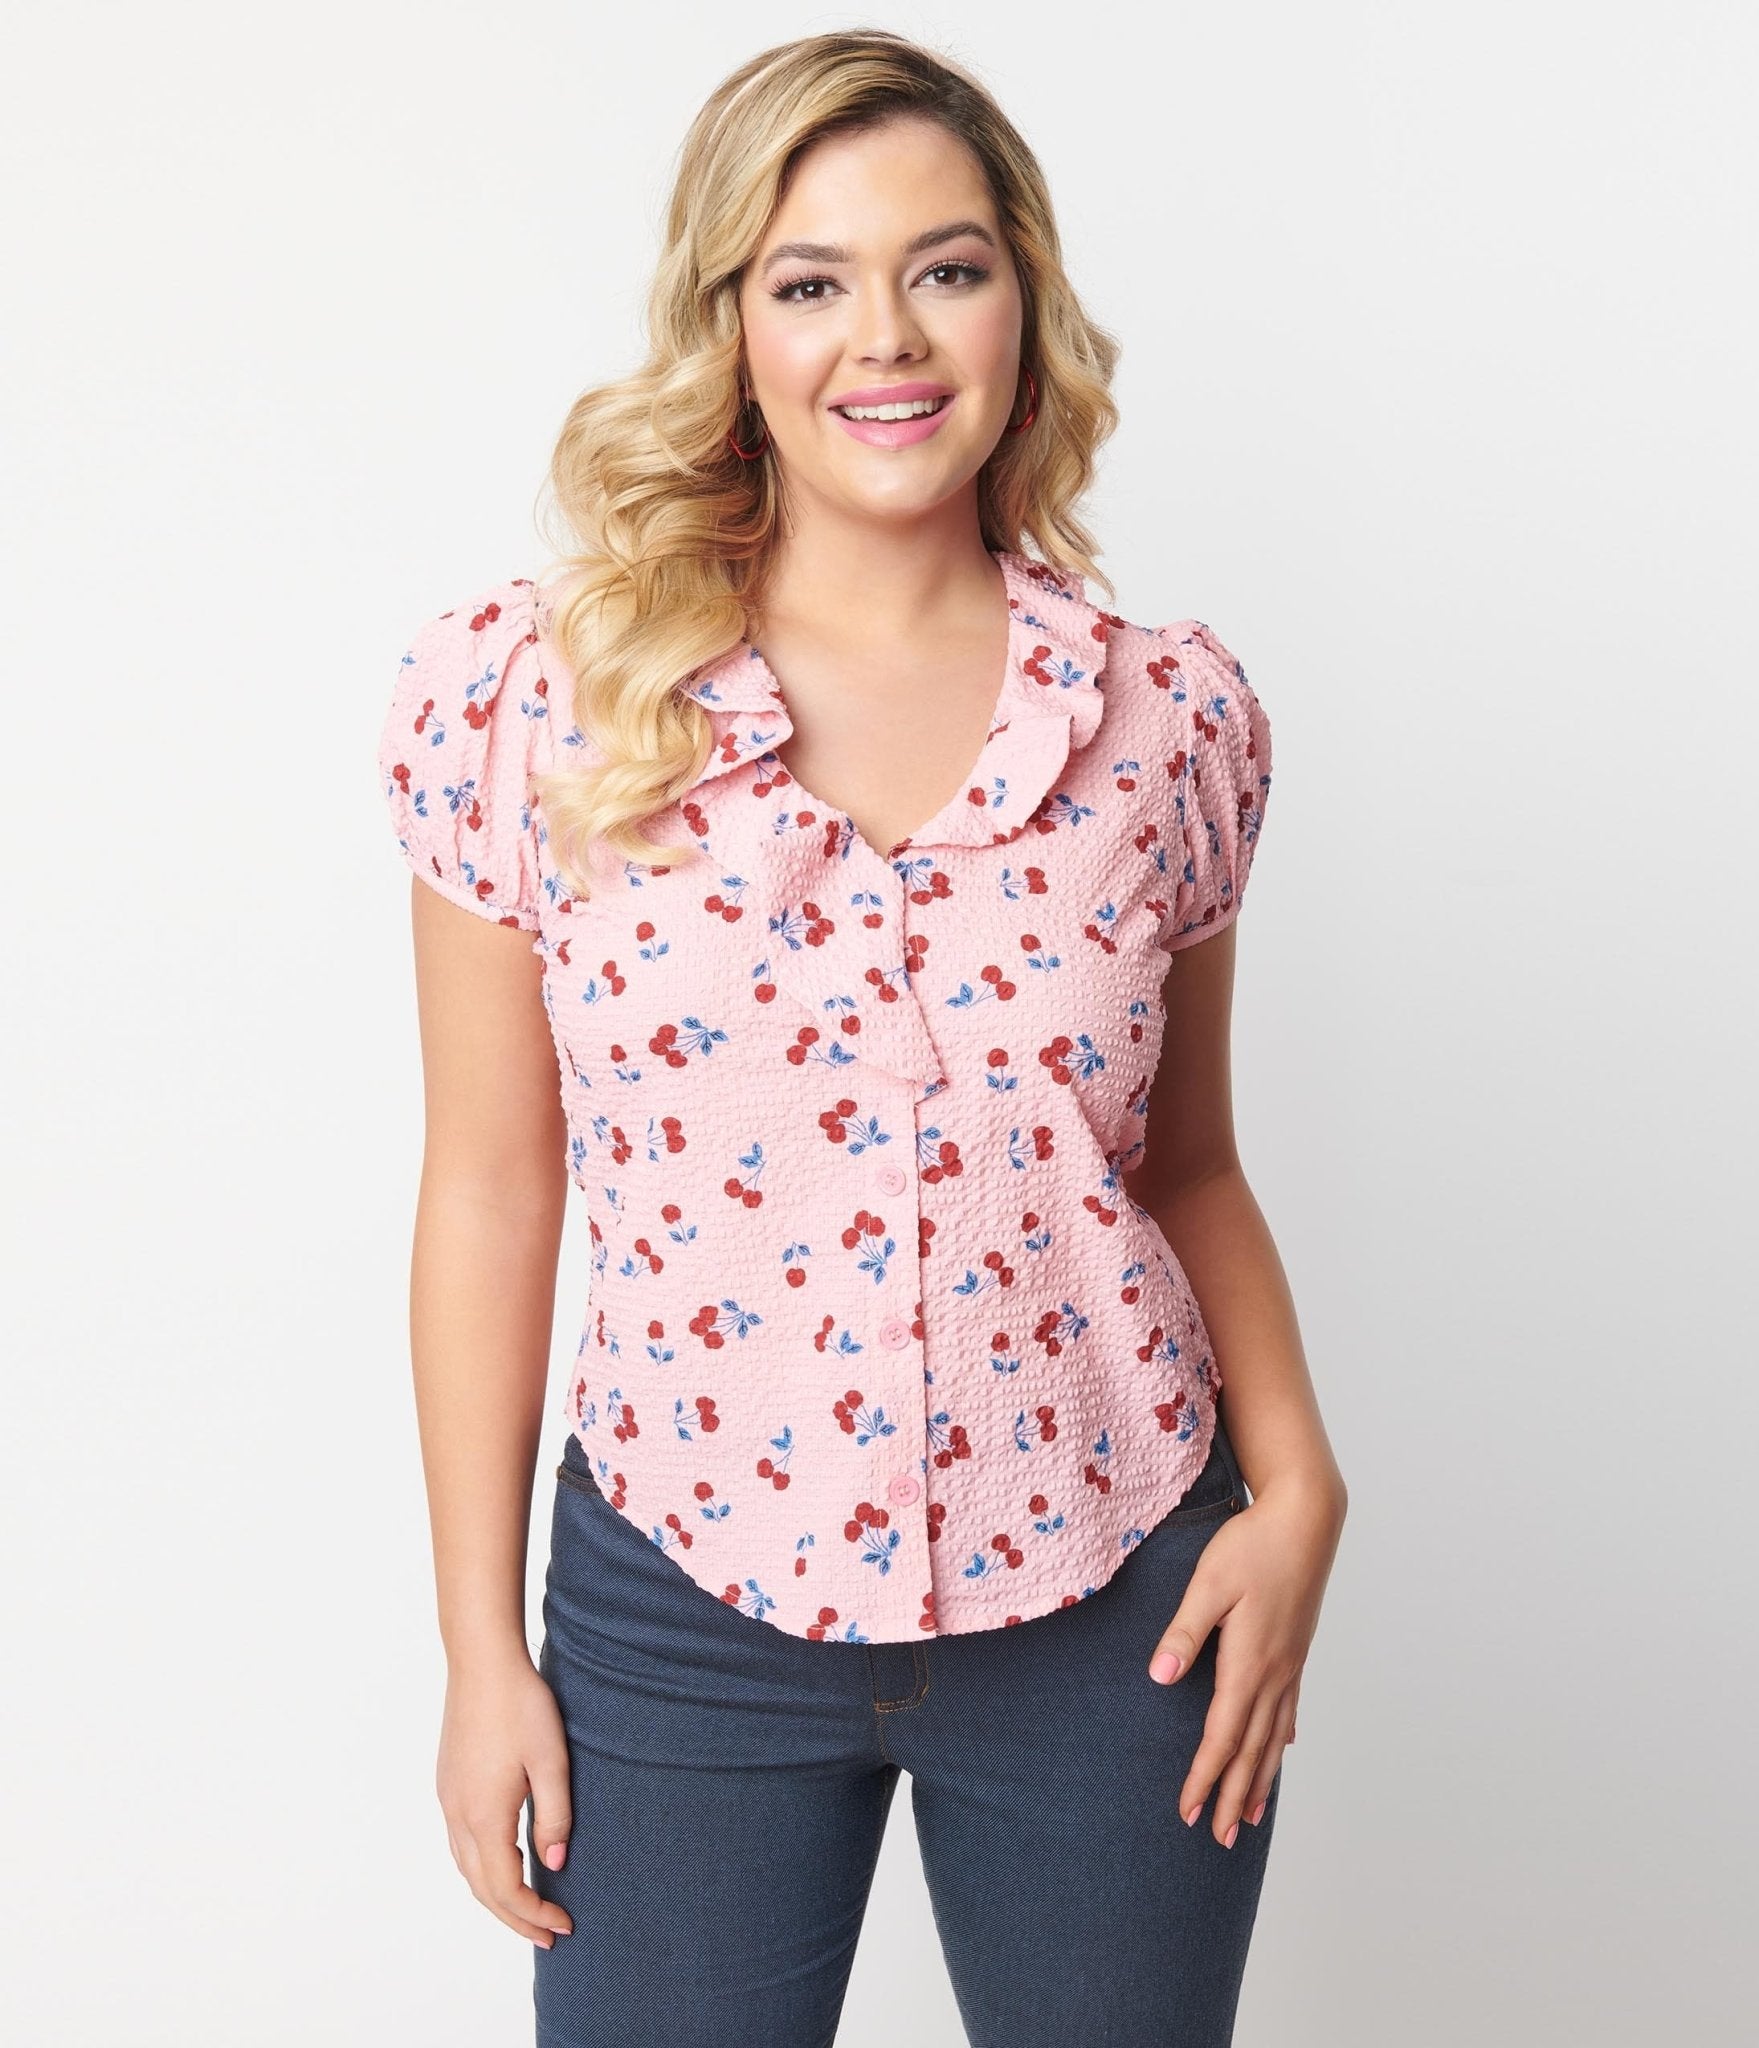 https://www.unique-vintage.com/cdn/shop/products/unique-vintage-pink-cherry-ruffle-short-sleeve-blouse-372967.jpg?v=1703099706&width=1920